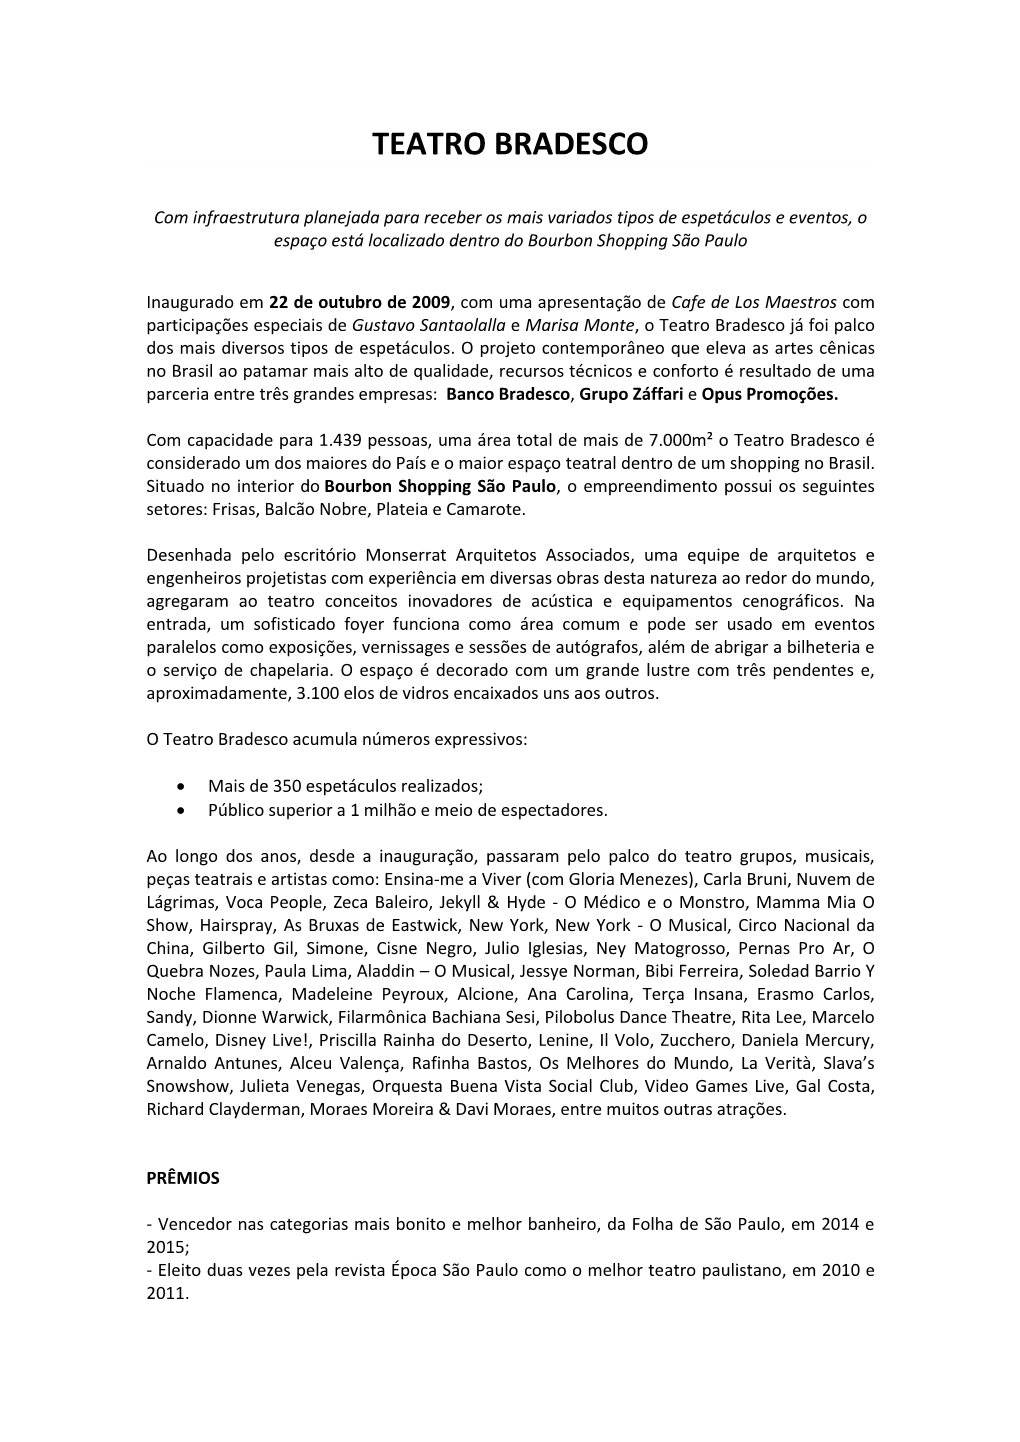 Teatro Bradesco (PDF)